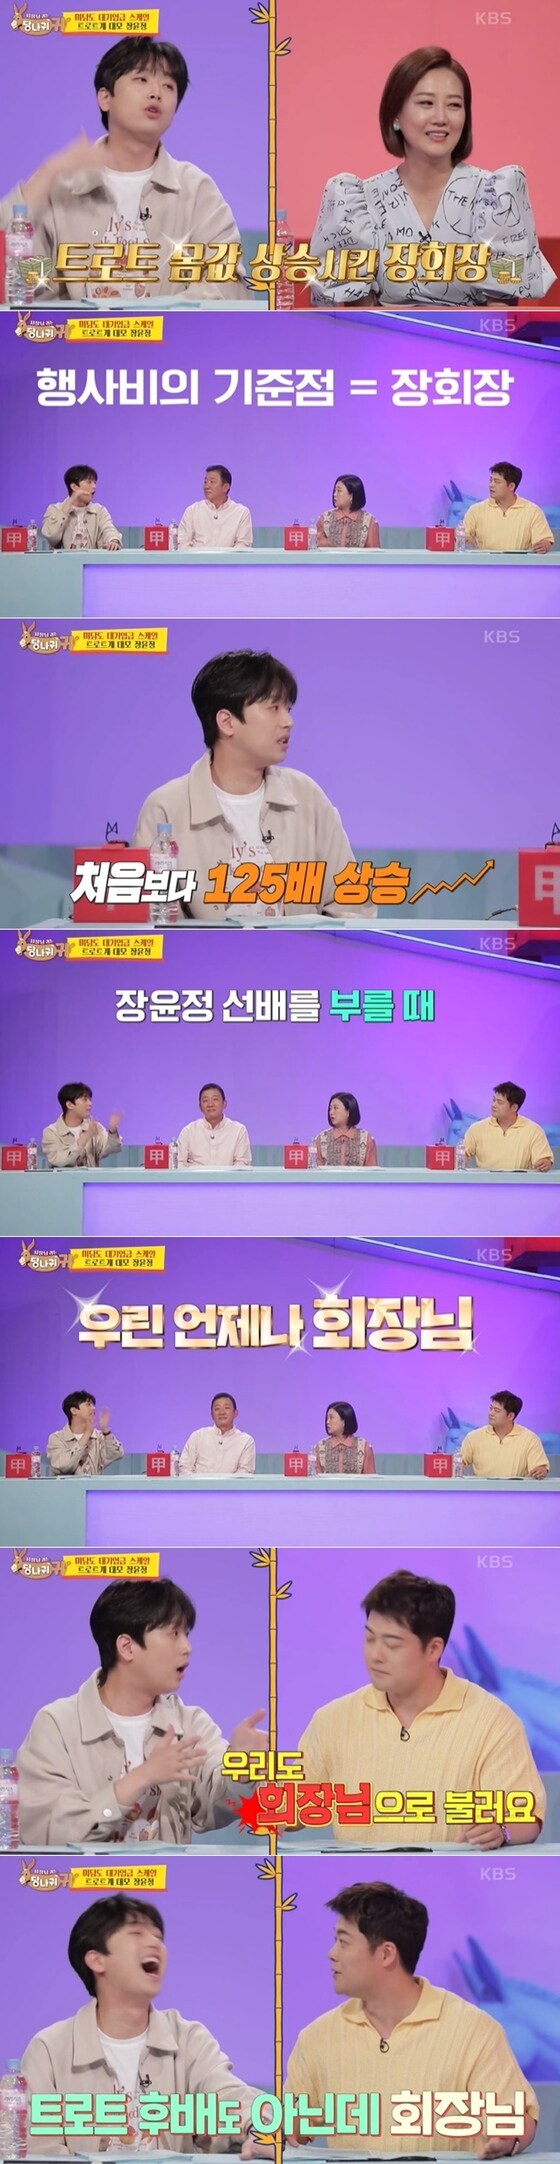 KBS 2TV 예능 '사장님 귀는 당나귀 귀' 방송 화면 갈무리 © 뉴스1